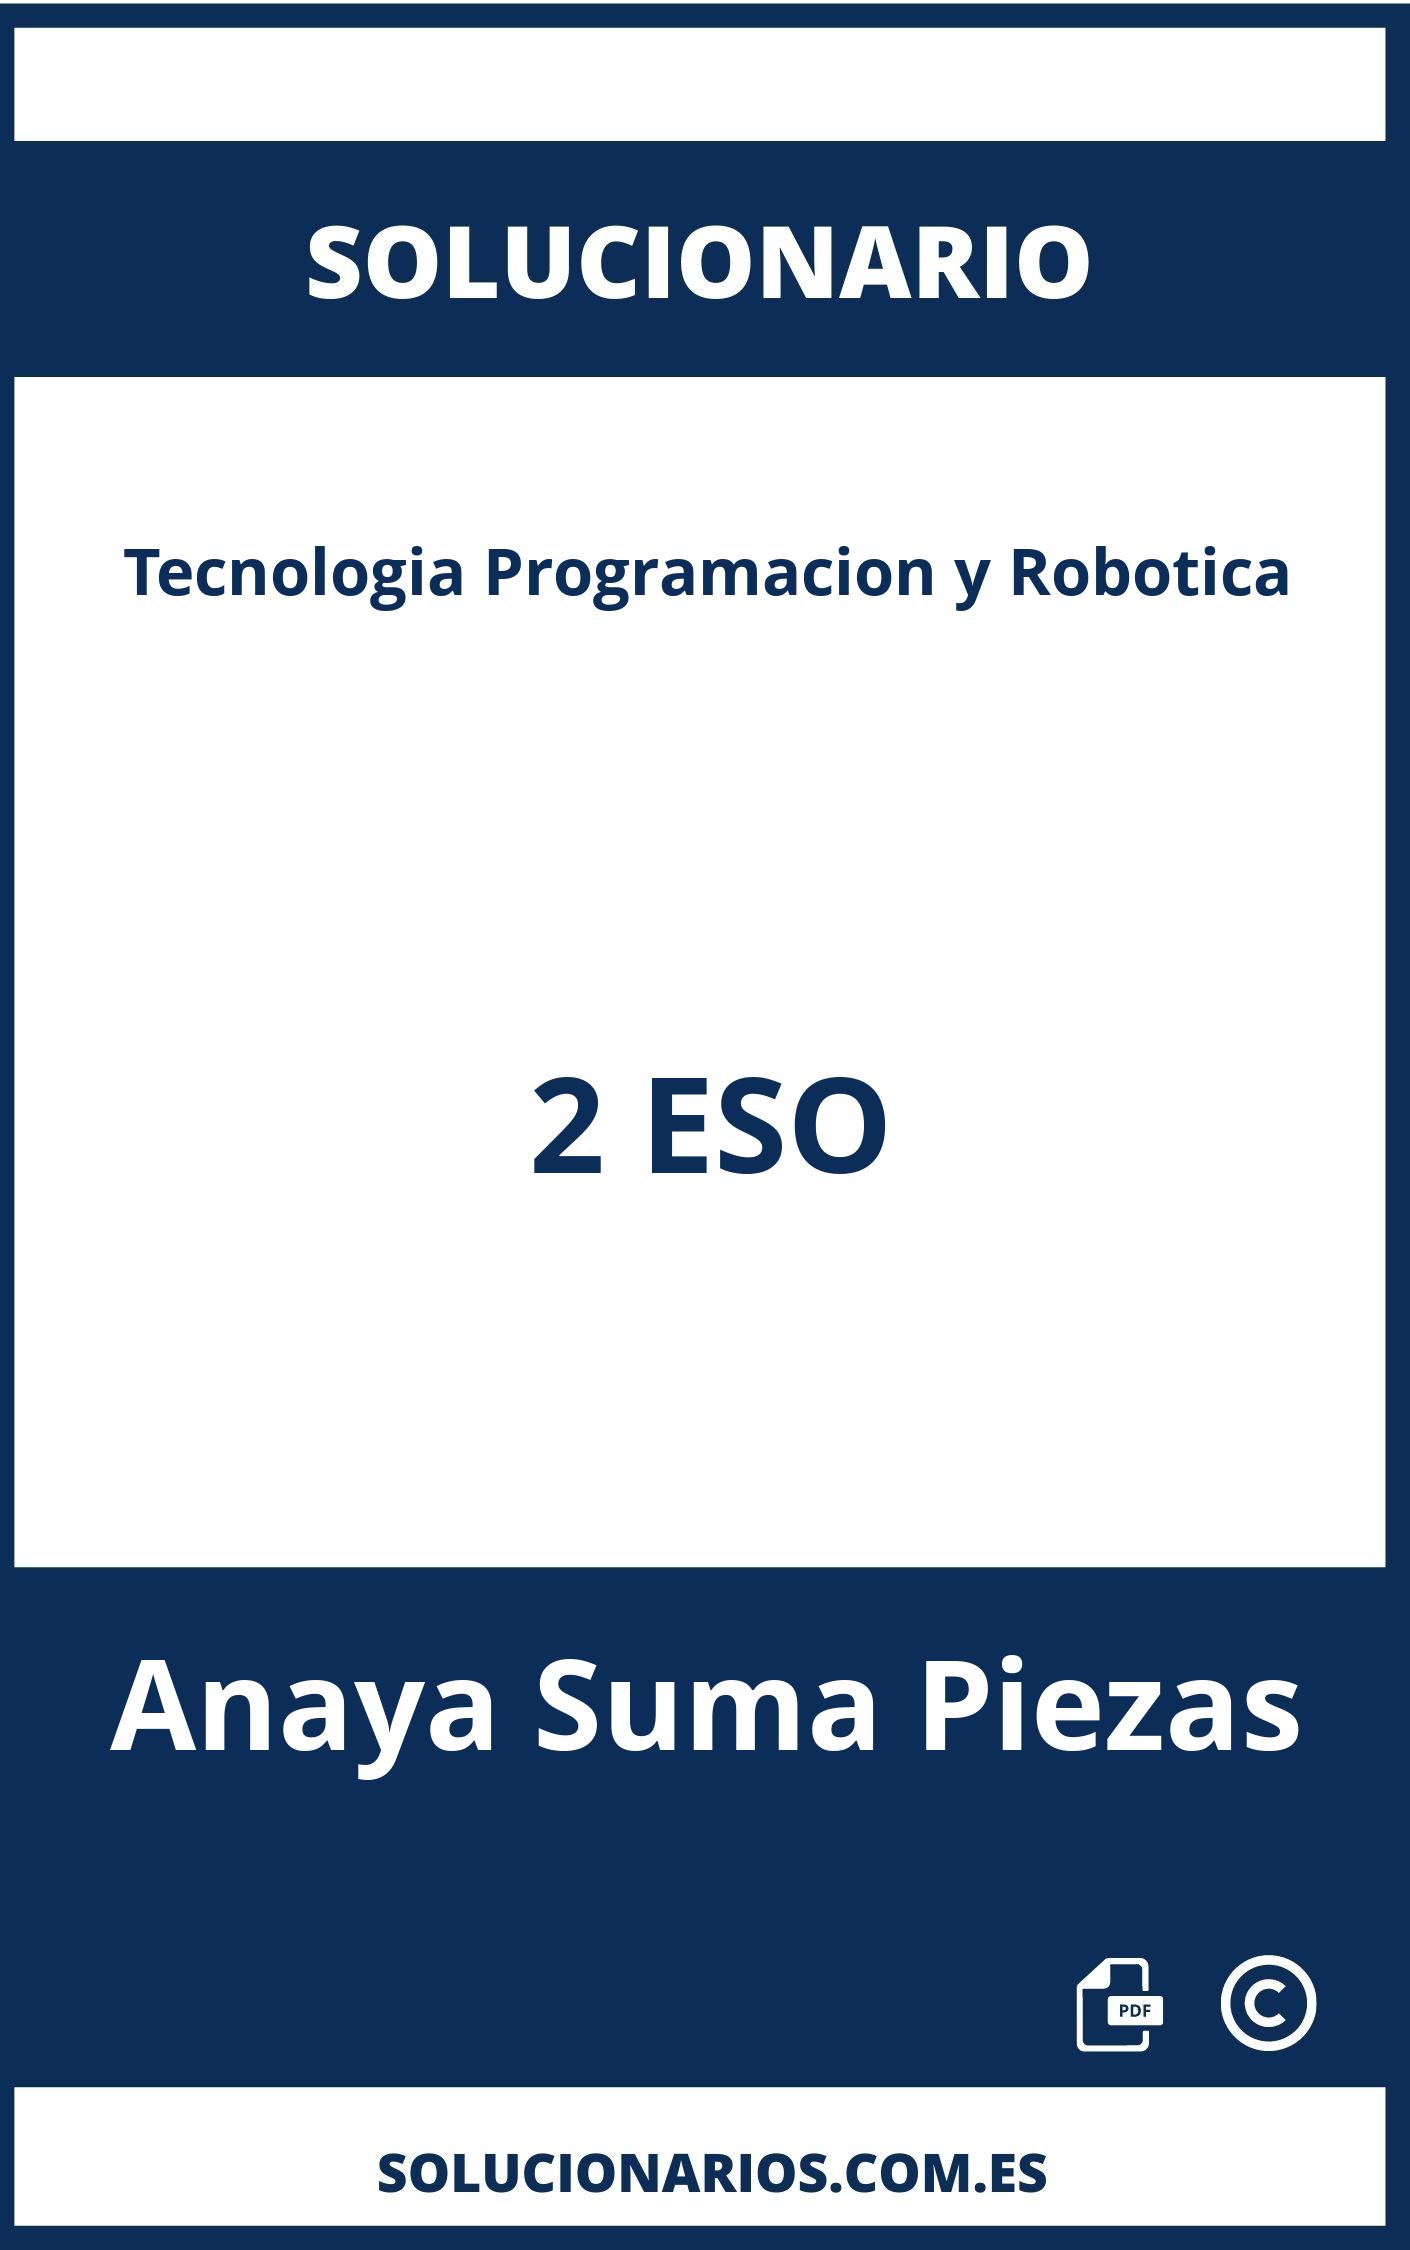 Solucionario Tecnologia Programacion y Robotica 2 ESO Anaya Suma Piezas